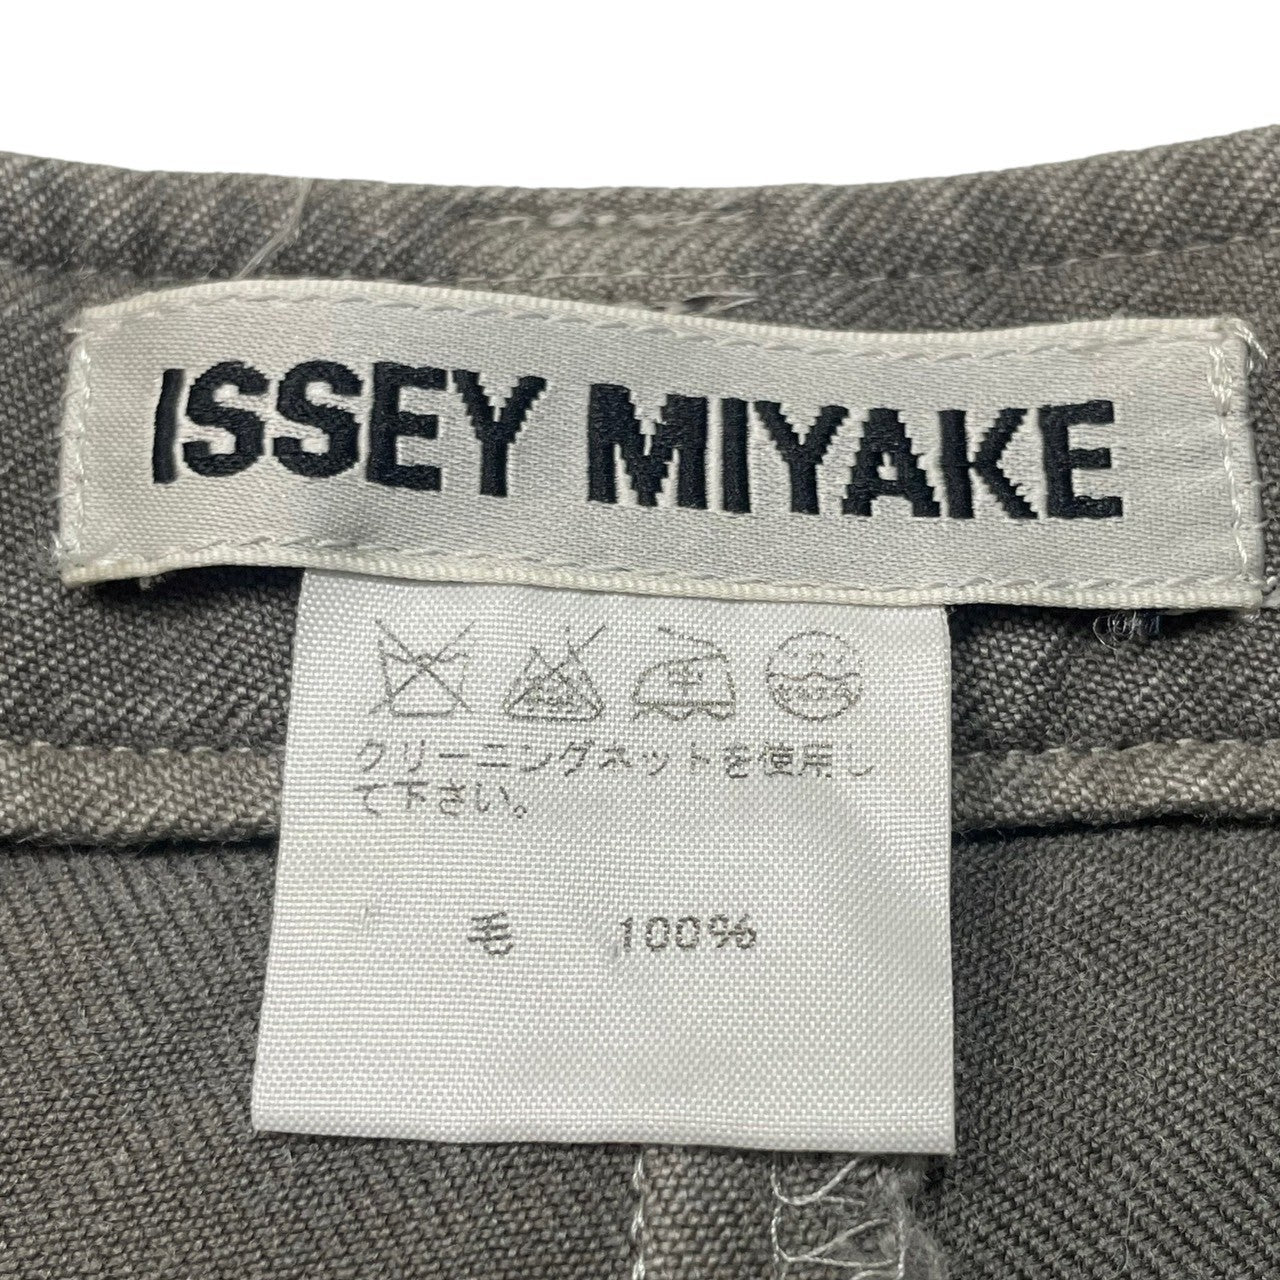 ISSEY MIYAKE(イッセイミヤケ) 00s Side-button straight wool trousers サイドボタン ストレート ウールパンツ IM33FF550 SIZE 1(S) グレー 薄シミ、裾上げ有